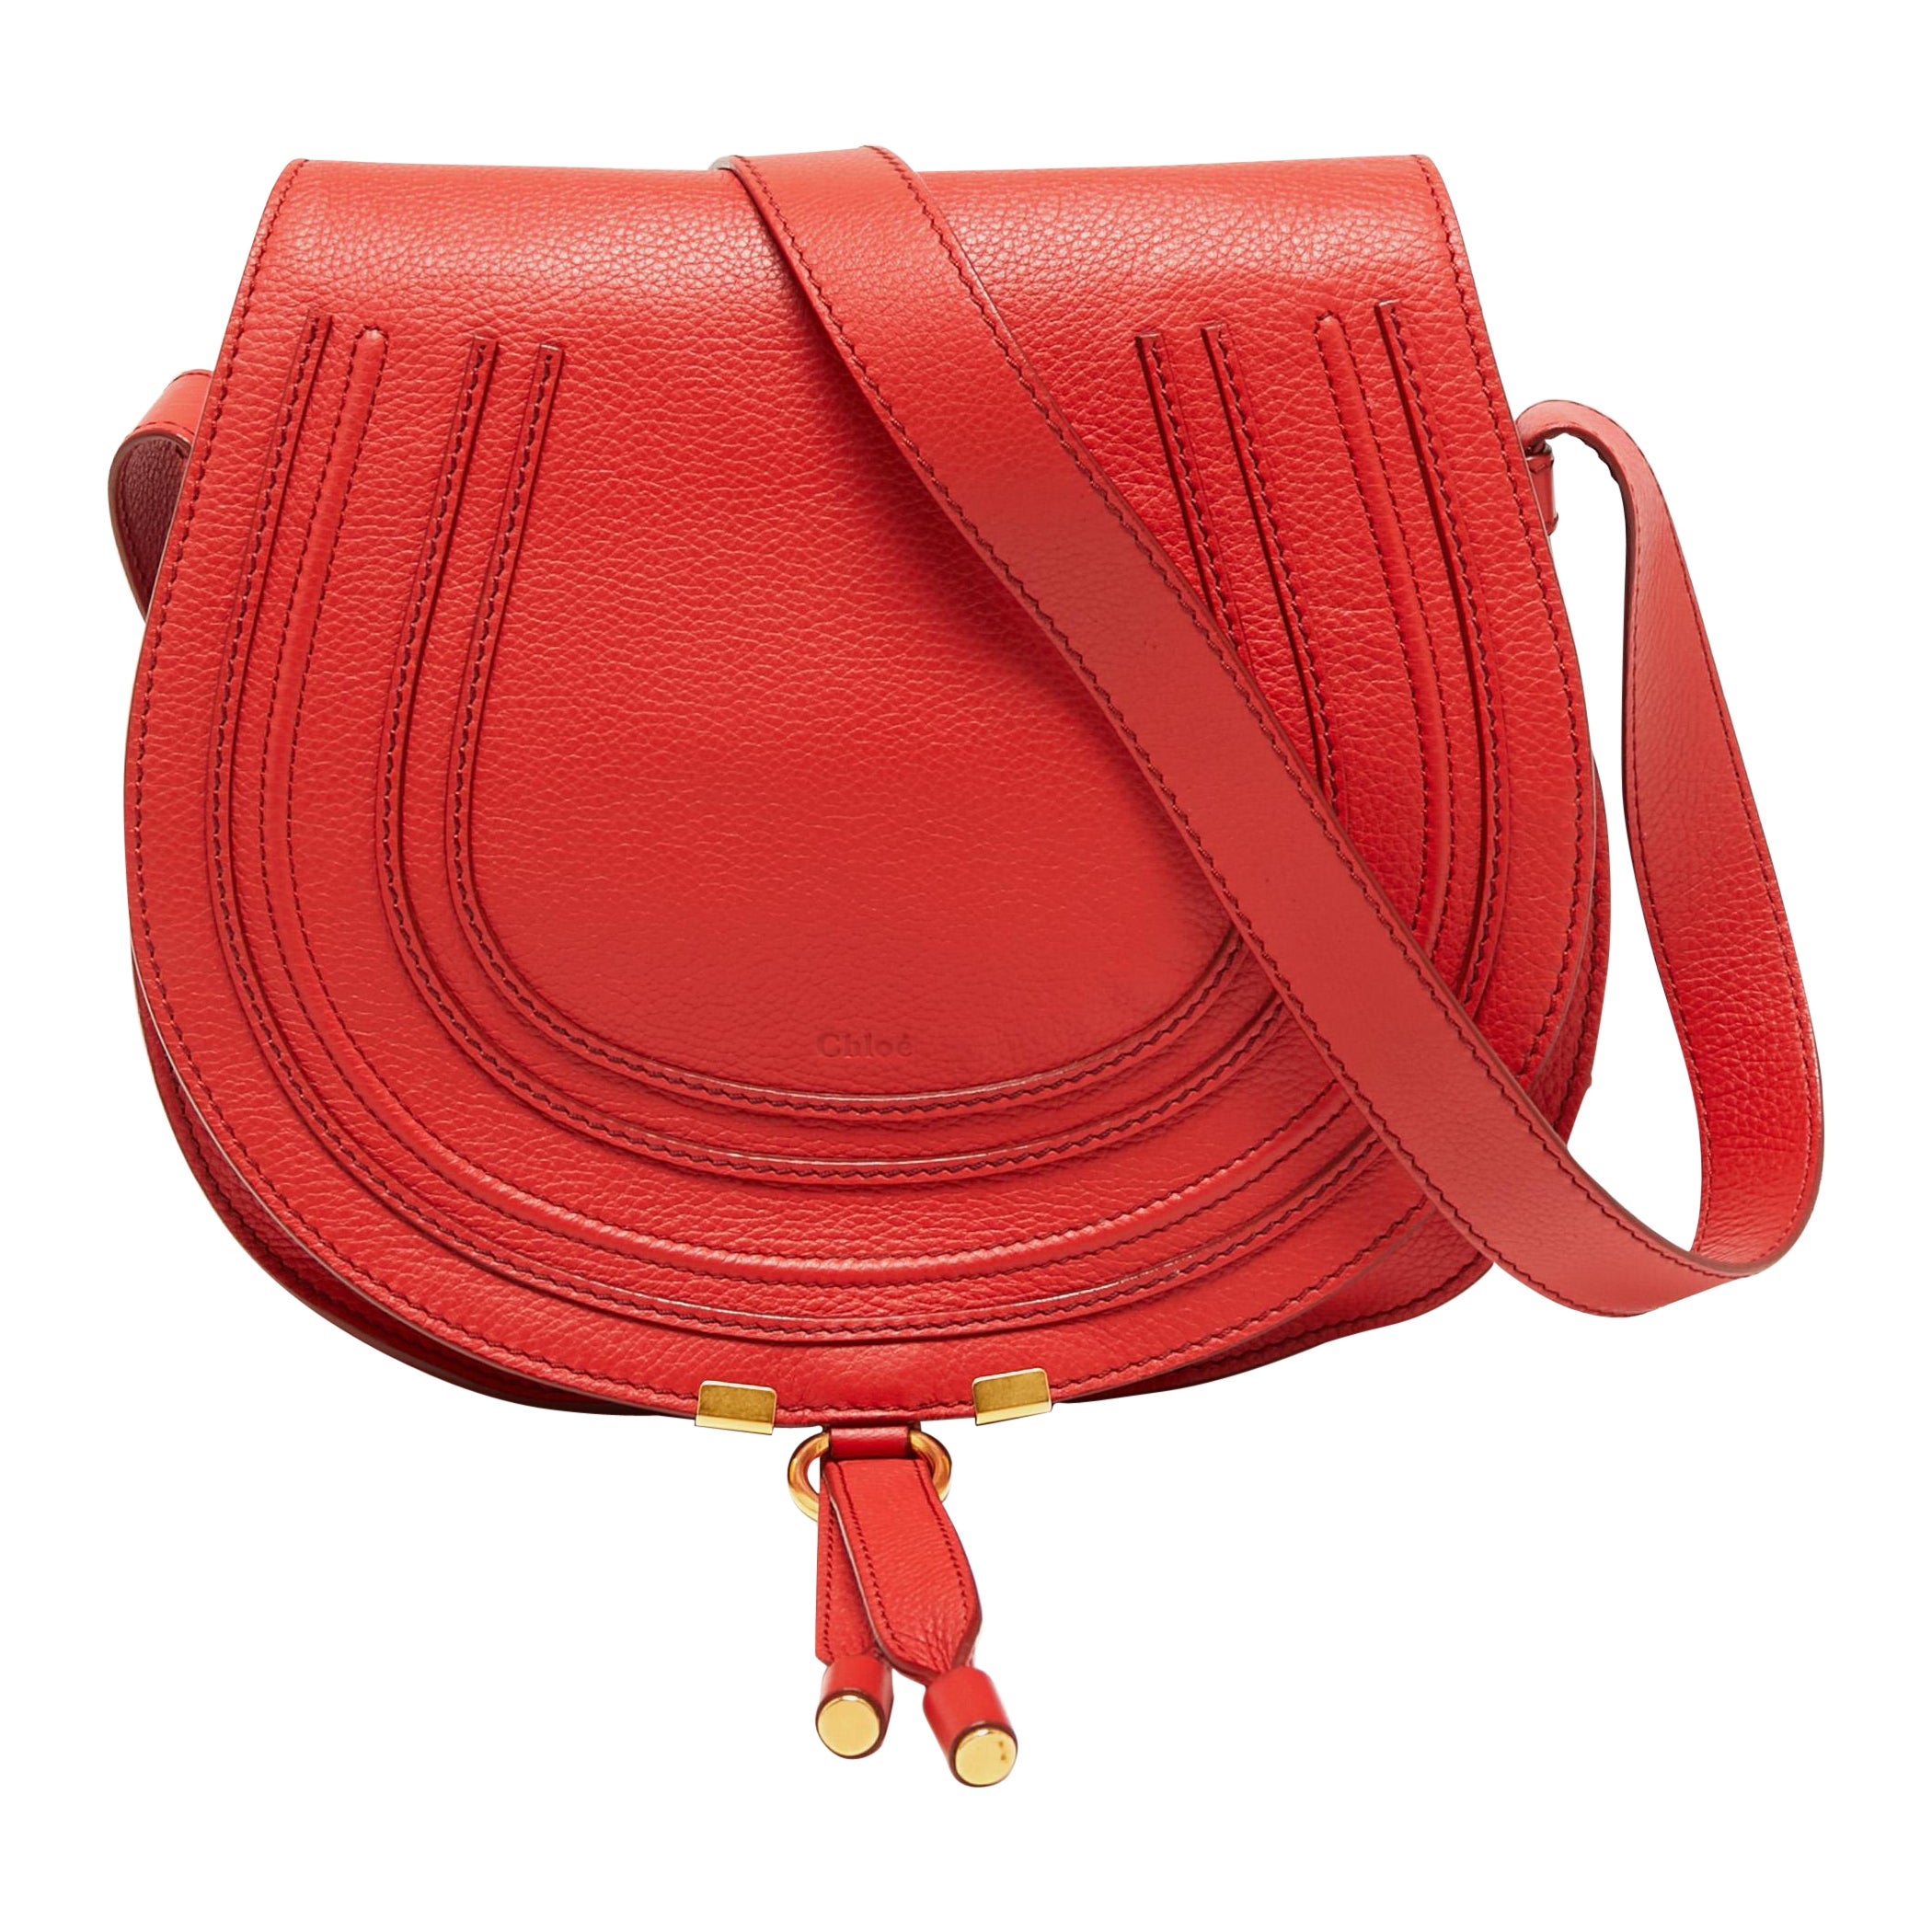 Chloe Red Leather Medium Marcie Crossbody Bag